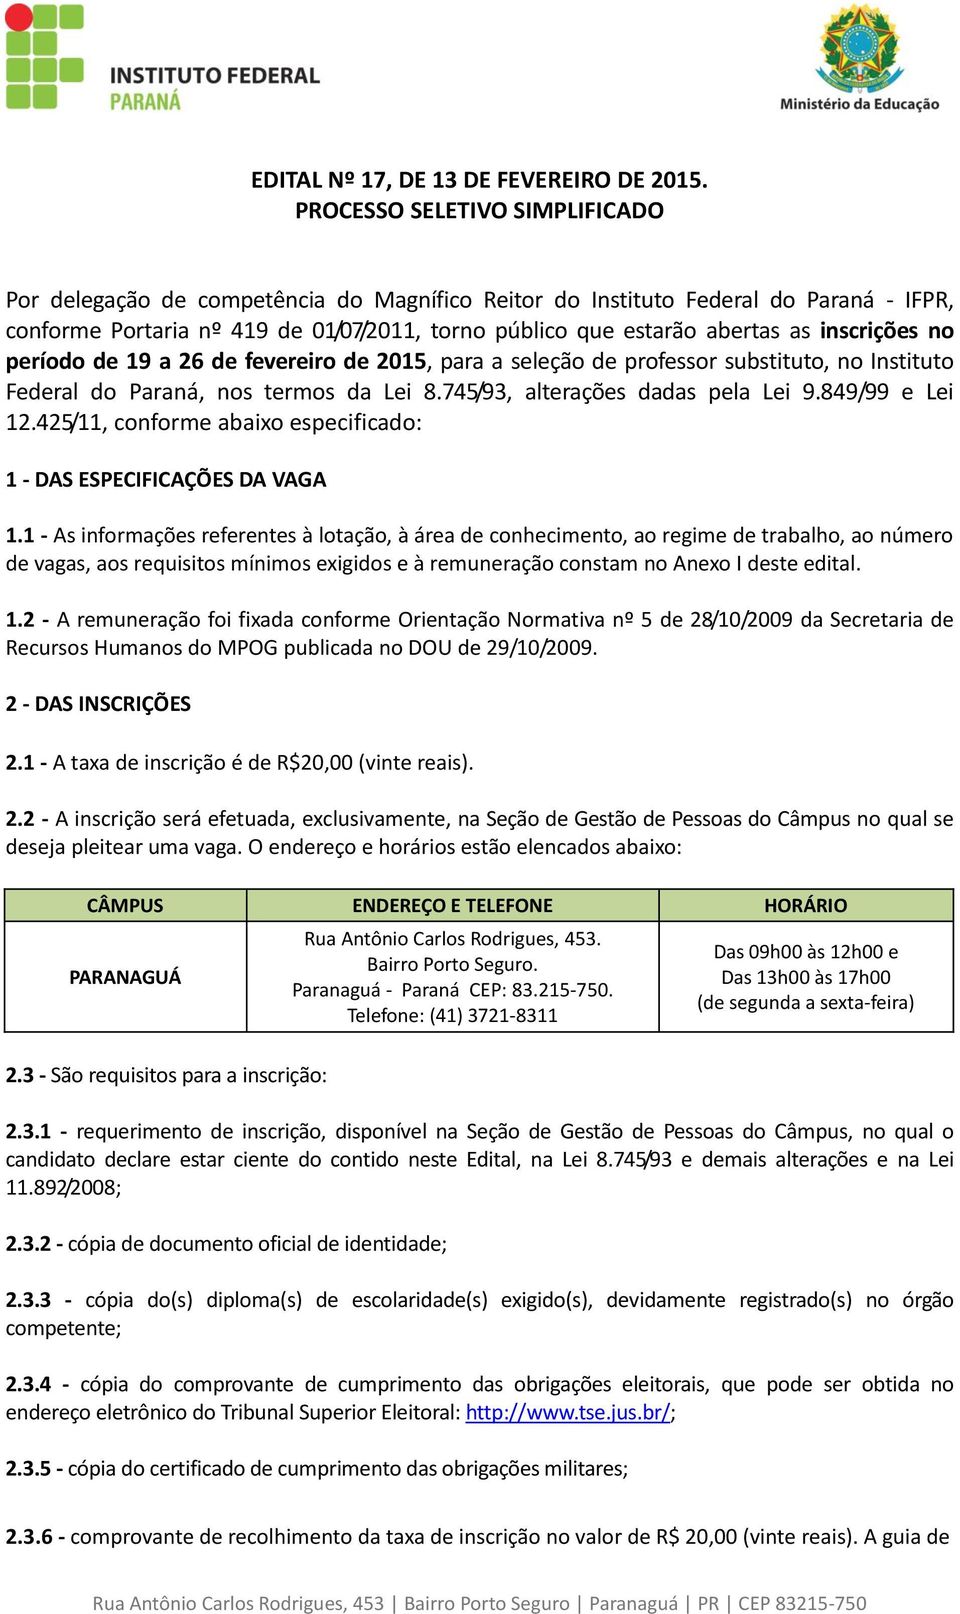 inscrições no período de 19 a 26 de fevereiro de 2015, para a seleção de professor substituto, no Instituto Federal do Paraná, nos termos da Lei 8.745/93, alterações dadas pela Lei 9.849/99 e Lei 12.